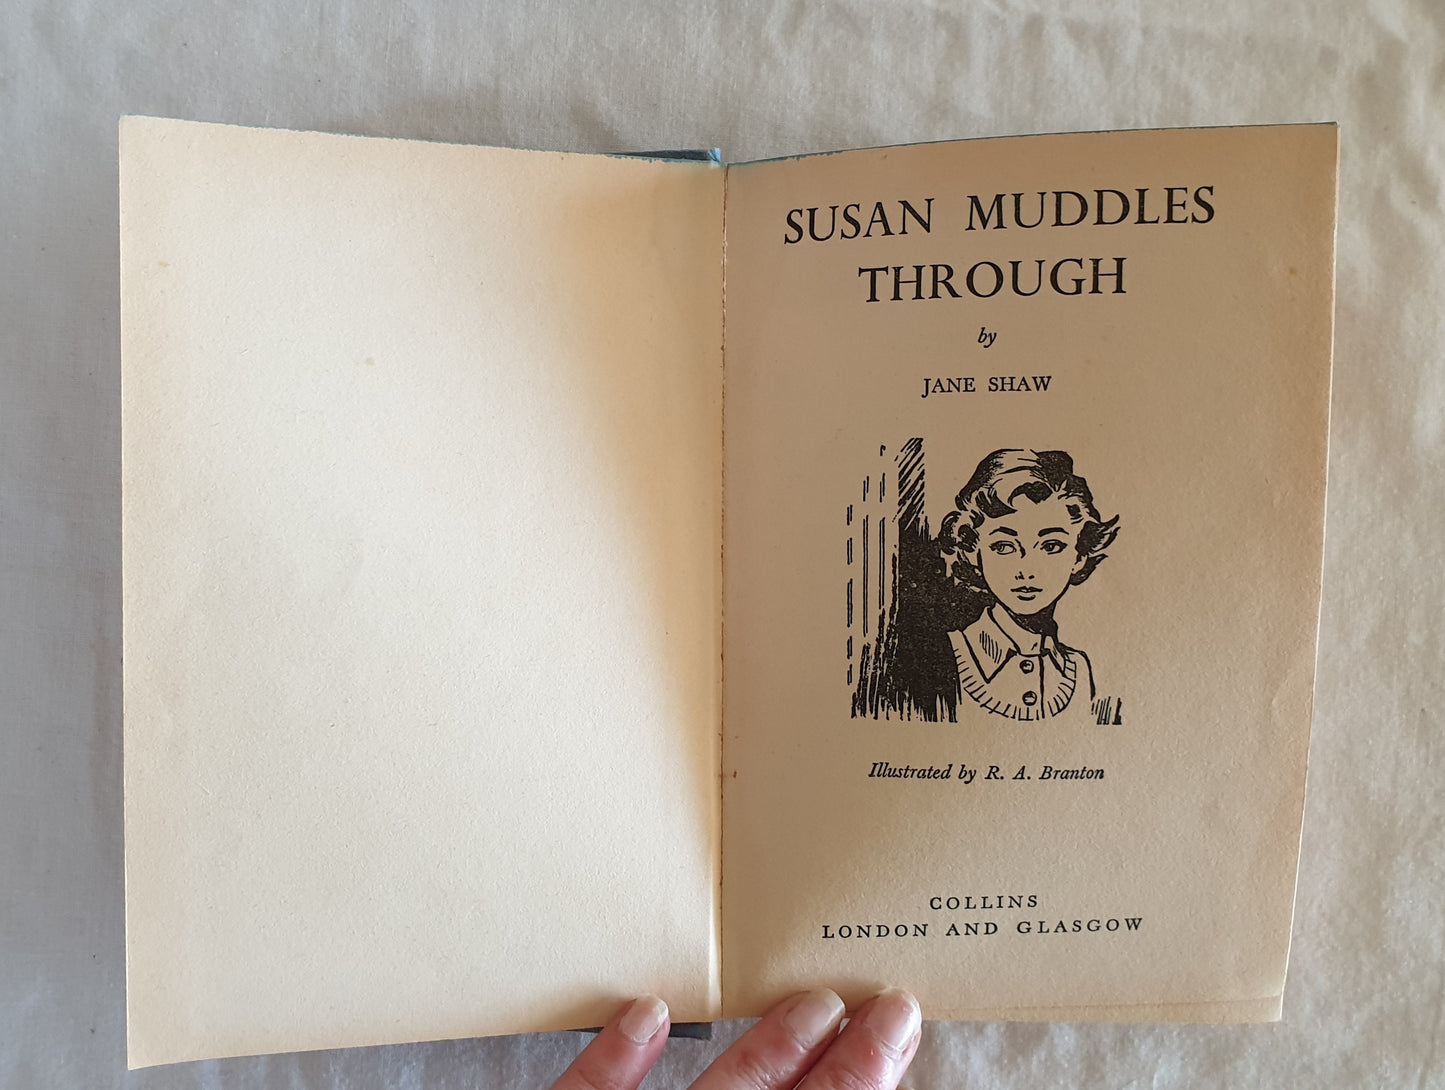 Susan Muddles Through by Jane Shaw